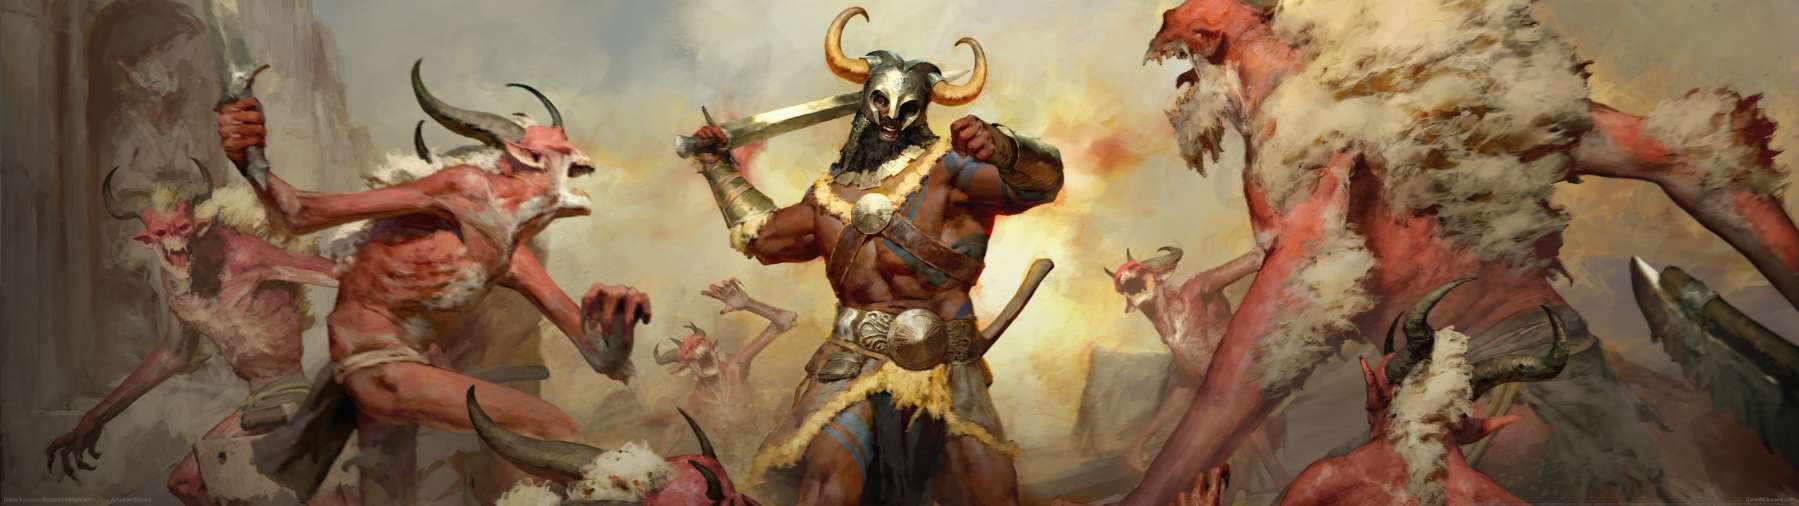 Diablo 4 superwide achtergrond 22